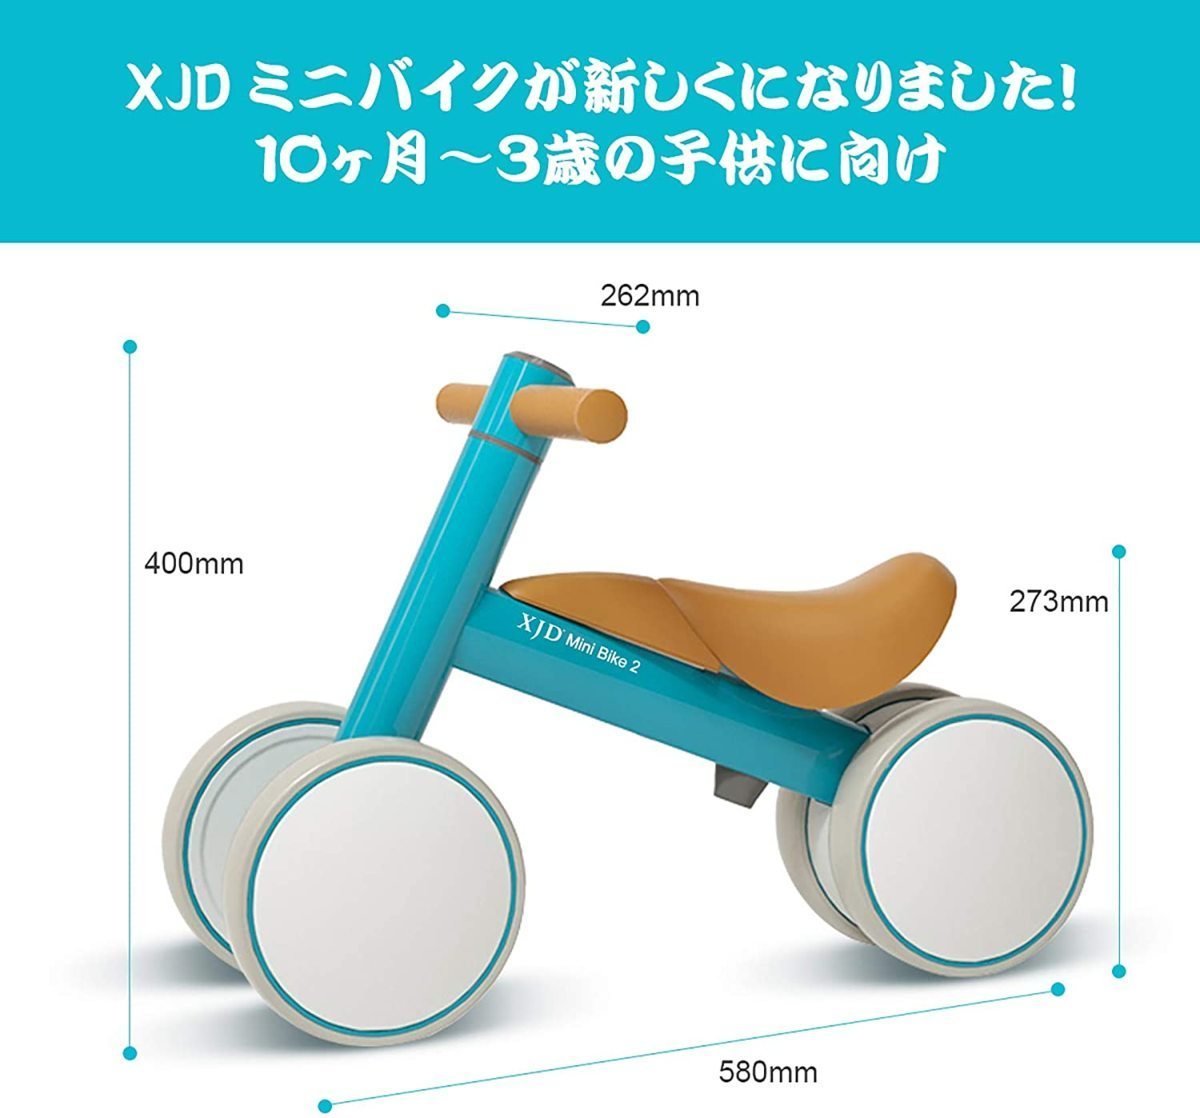 市場 XJD 幼児用 Mini チャレンジバイク Bike 1歳-3歳 こども自転車 三輪車 ベビーバイク